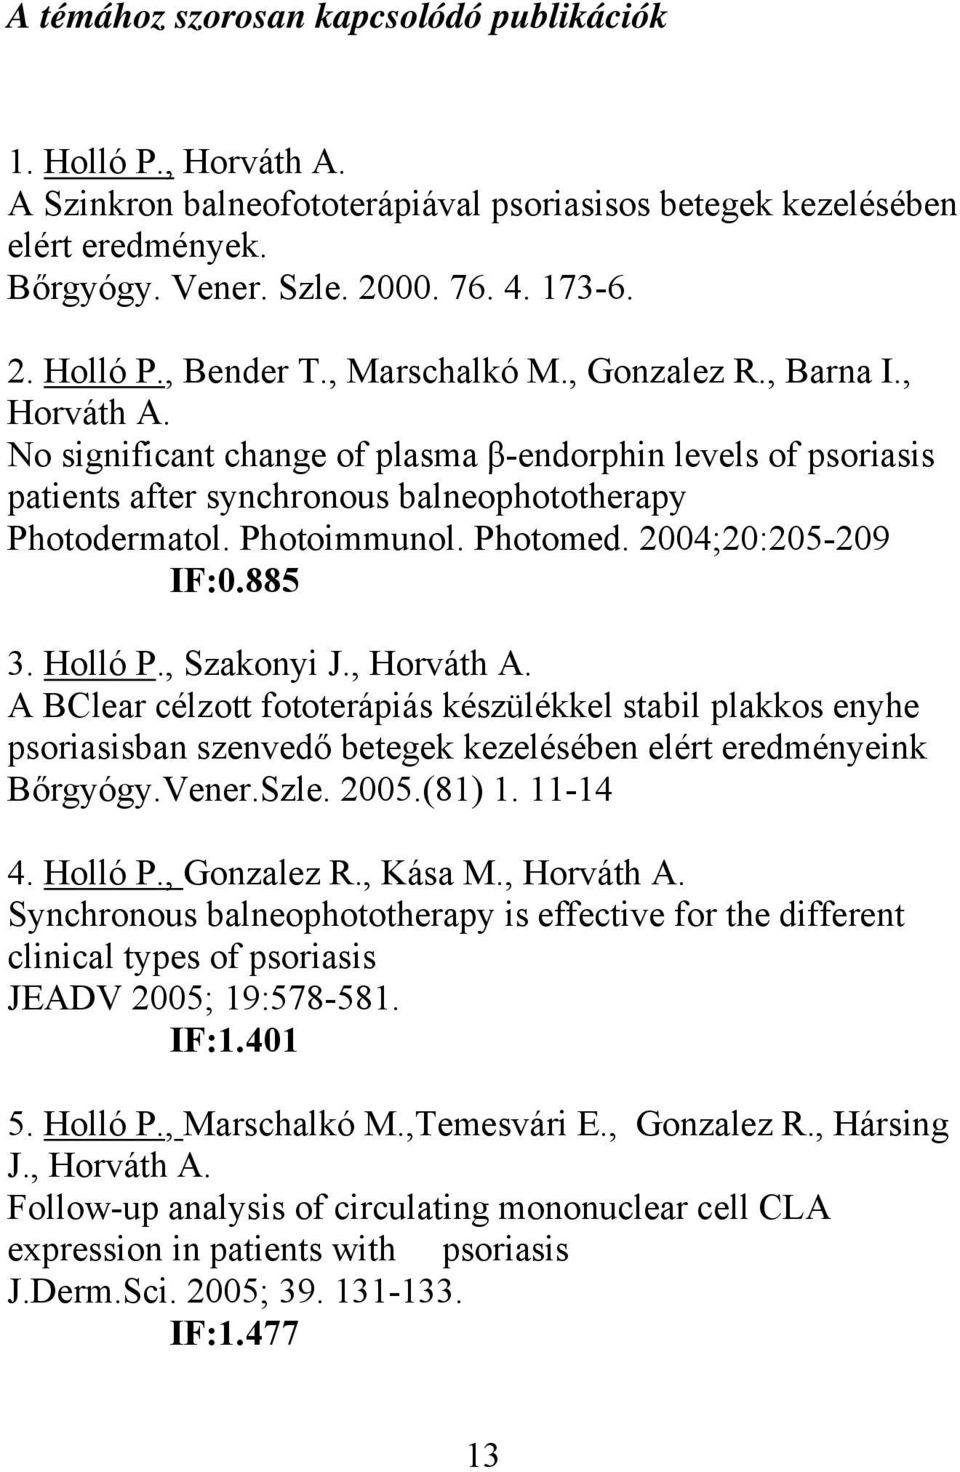 2004;20:205-209 IF:0.885 3. Holló P., Szakonyi J., Horváth A. A BClear célzott fototerápiás készülékkel stabil plakkos enyhe psoriasisban szenvedő betegek kezelésében elért eredményeink Bőrgyógy.